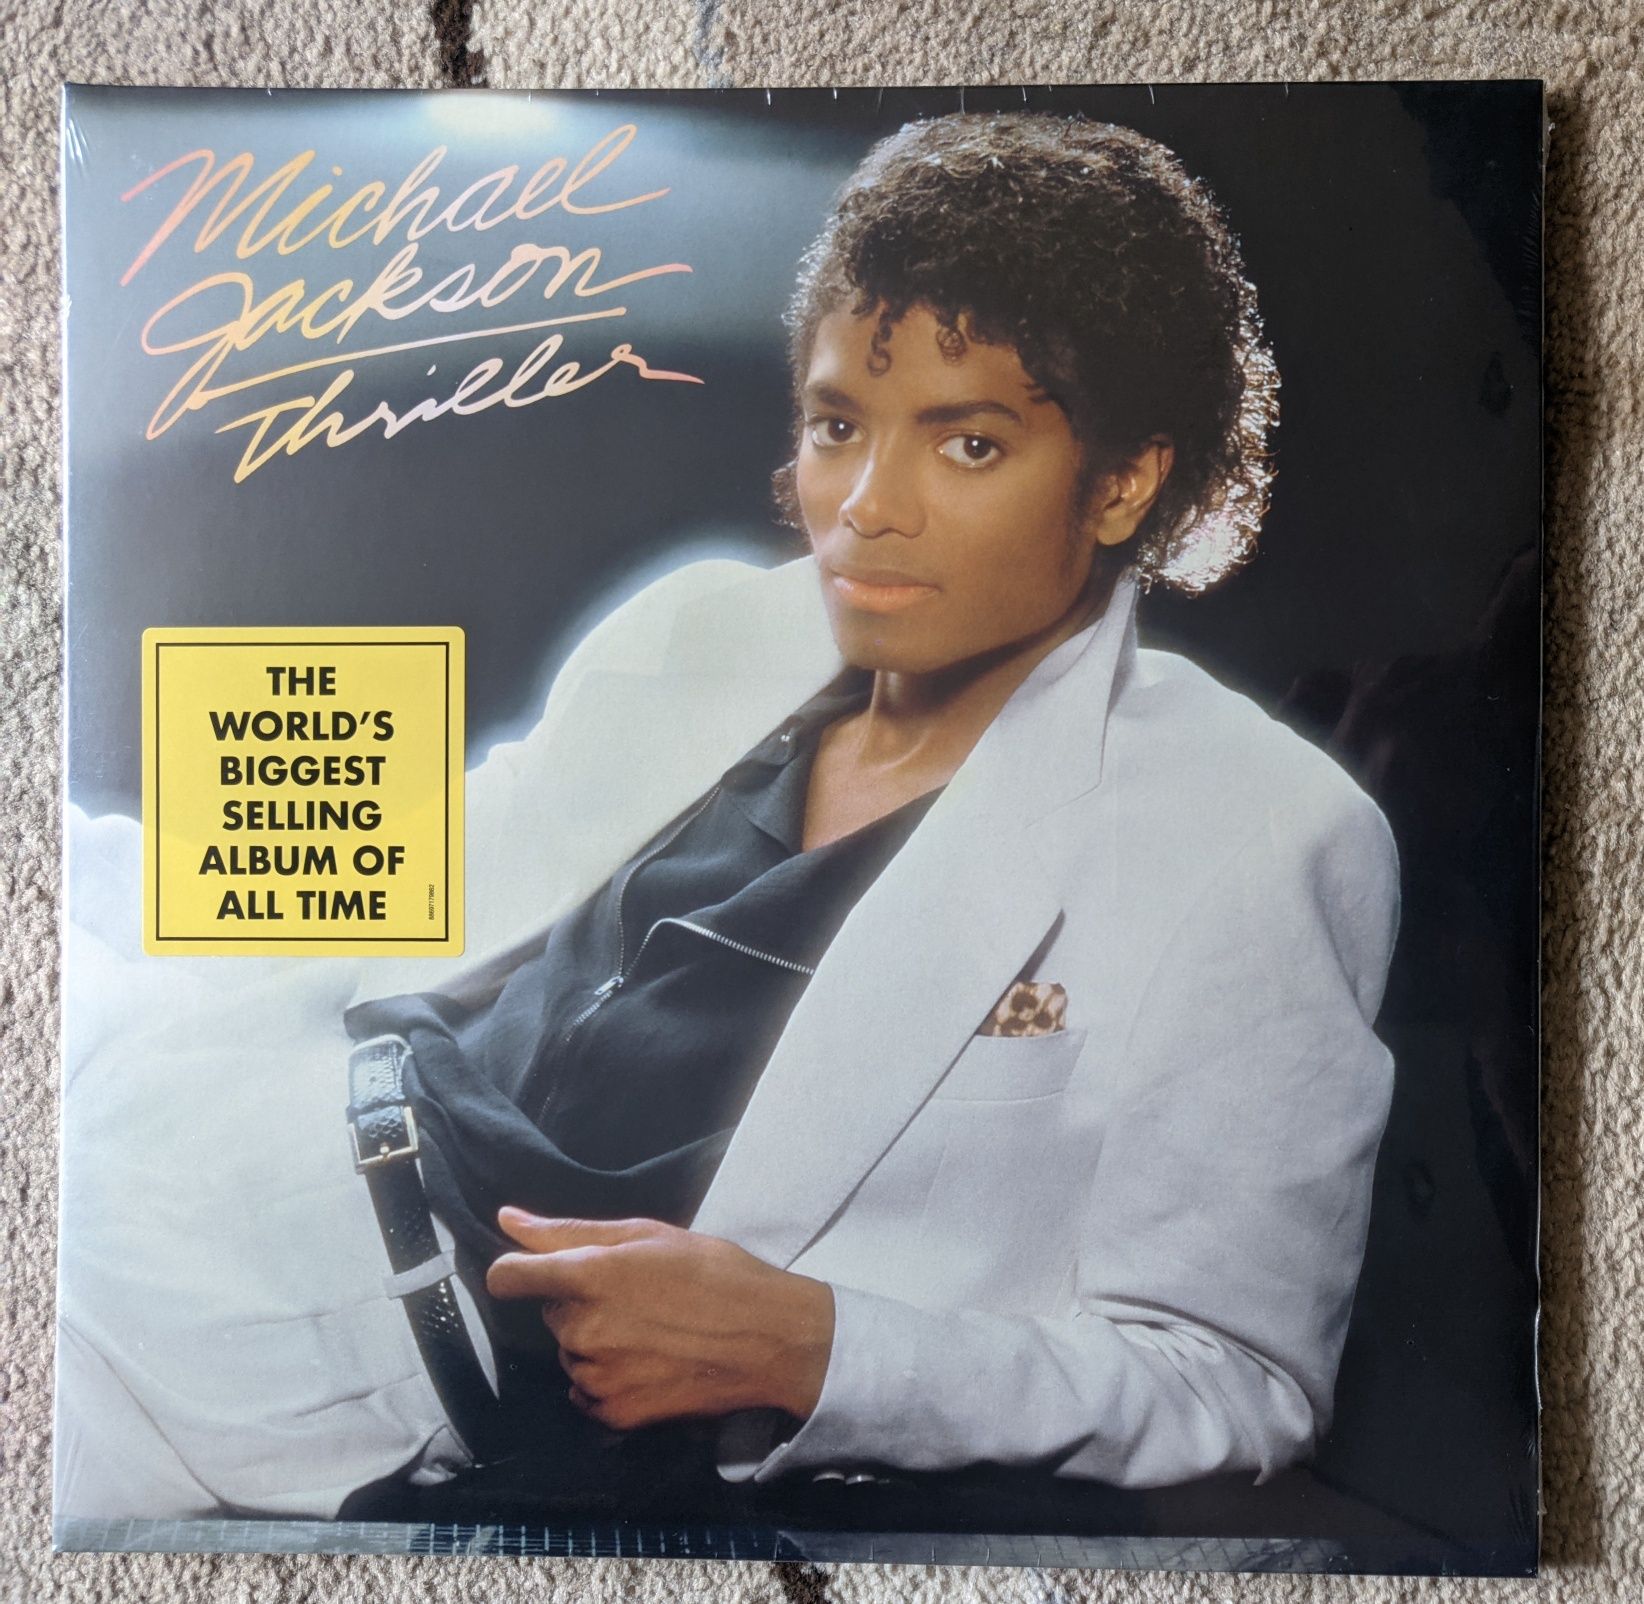 Виниловая пластинка Michael Jackson "Triller" 1982/2015г.